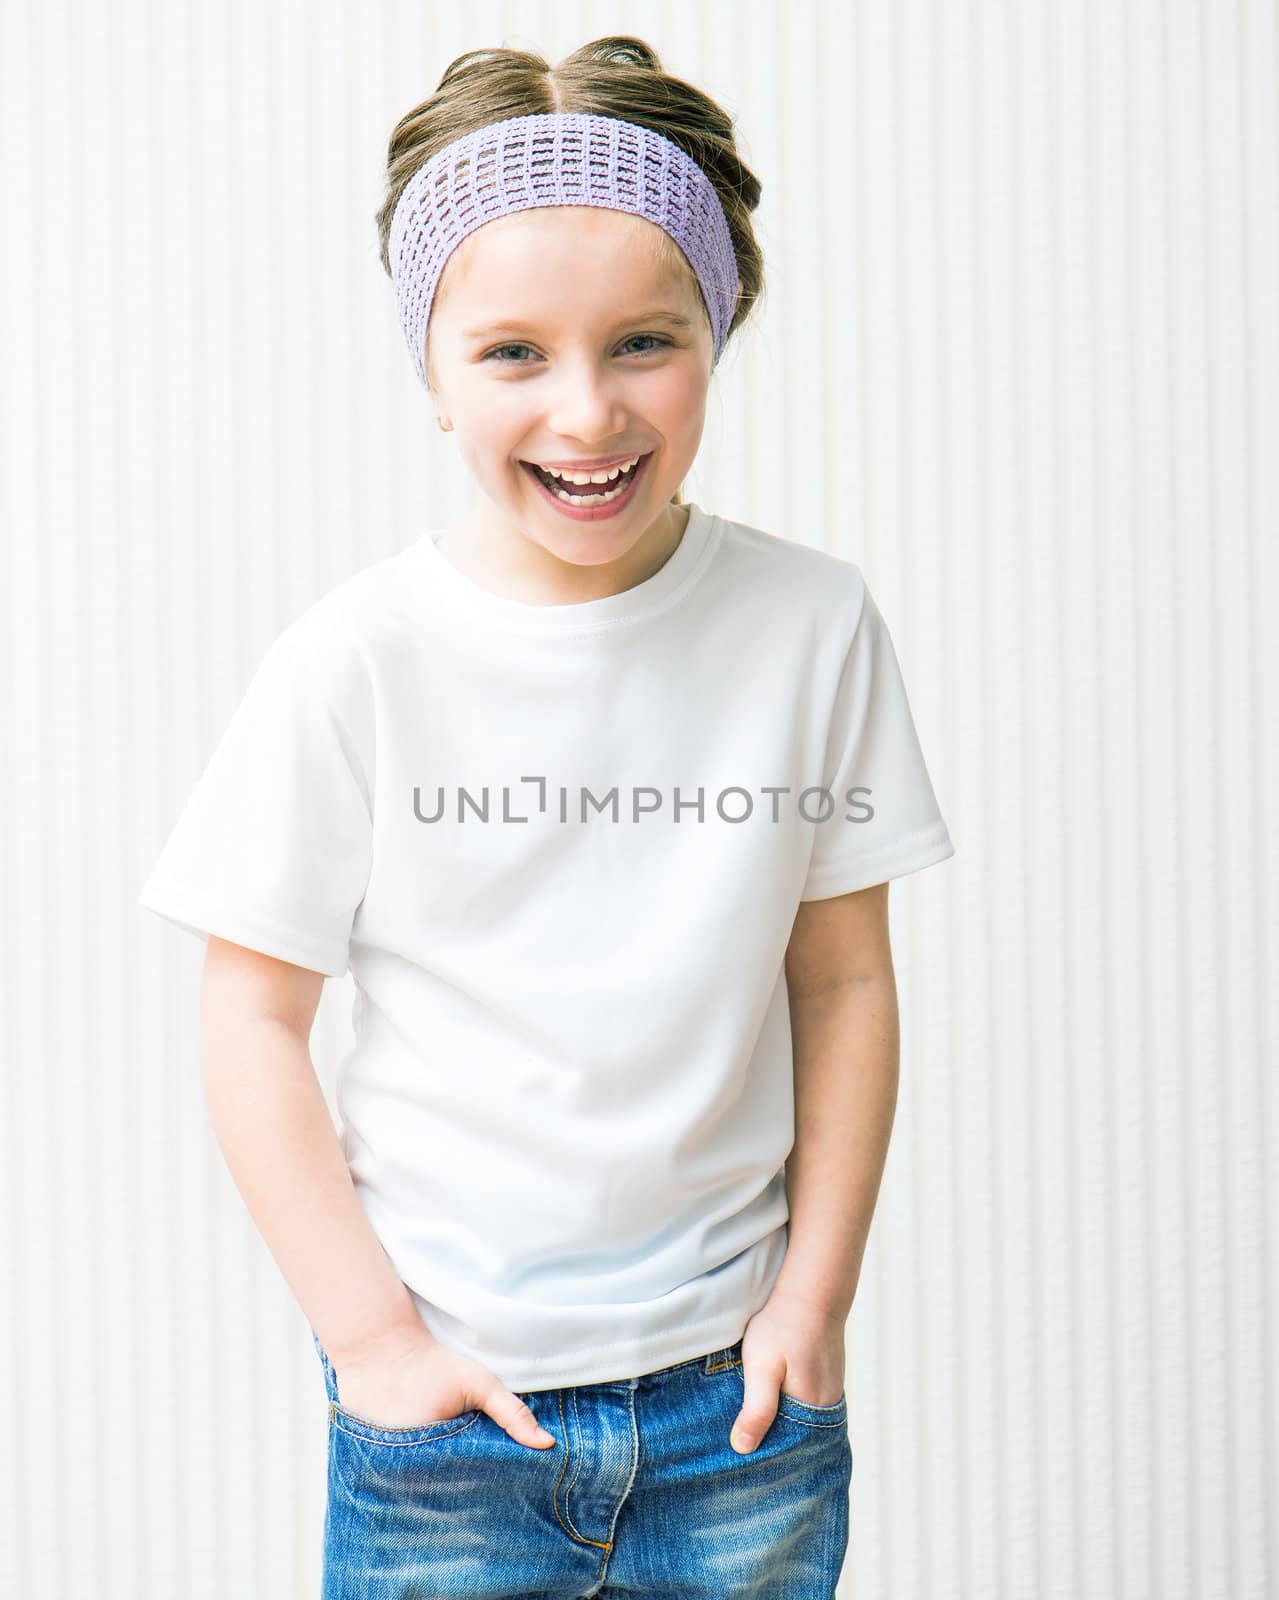 ittle girl in white t-shirt by GekaSkr